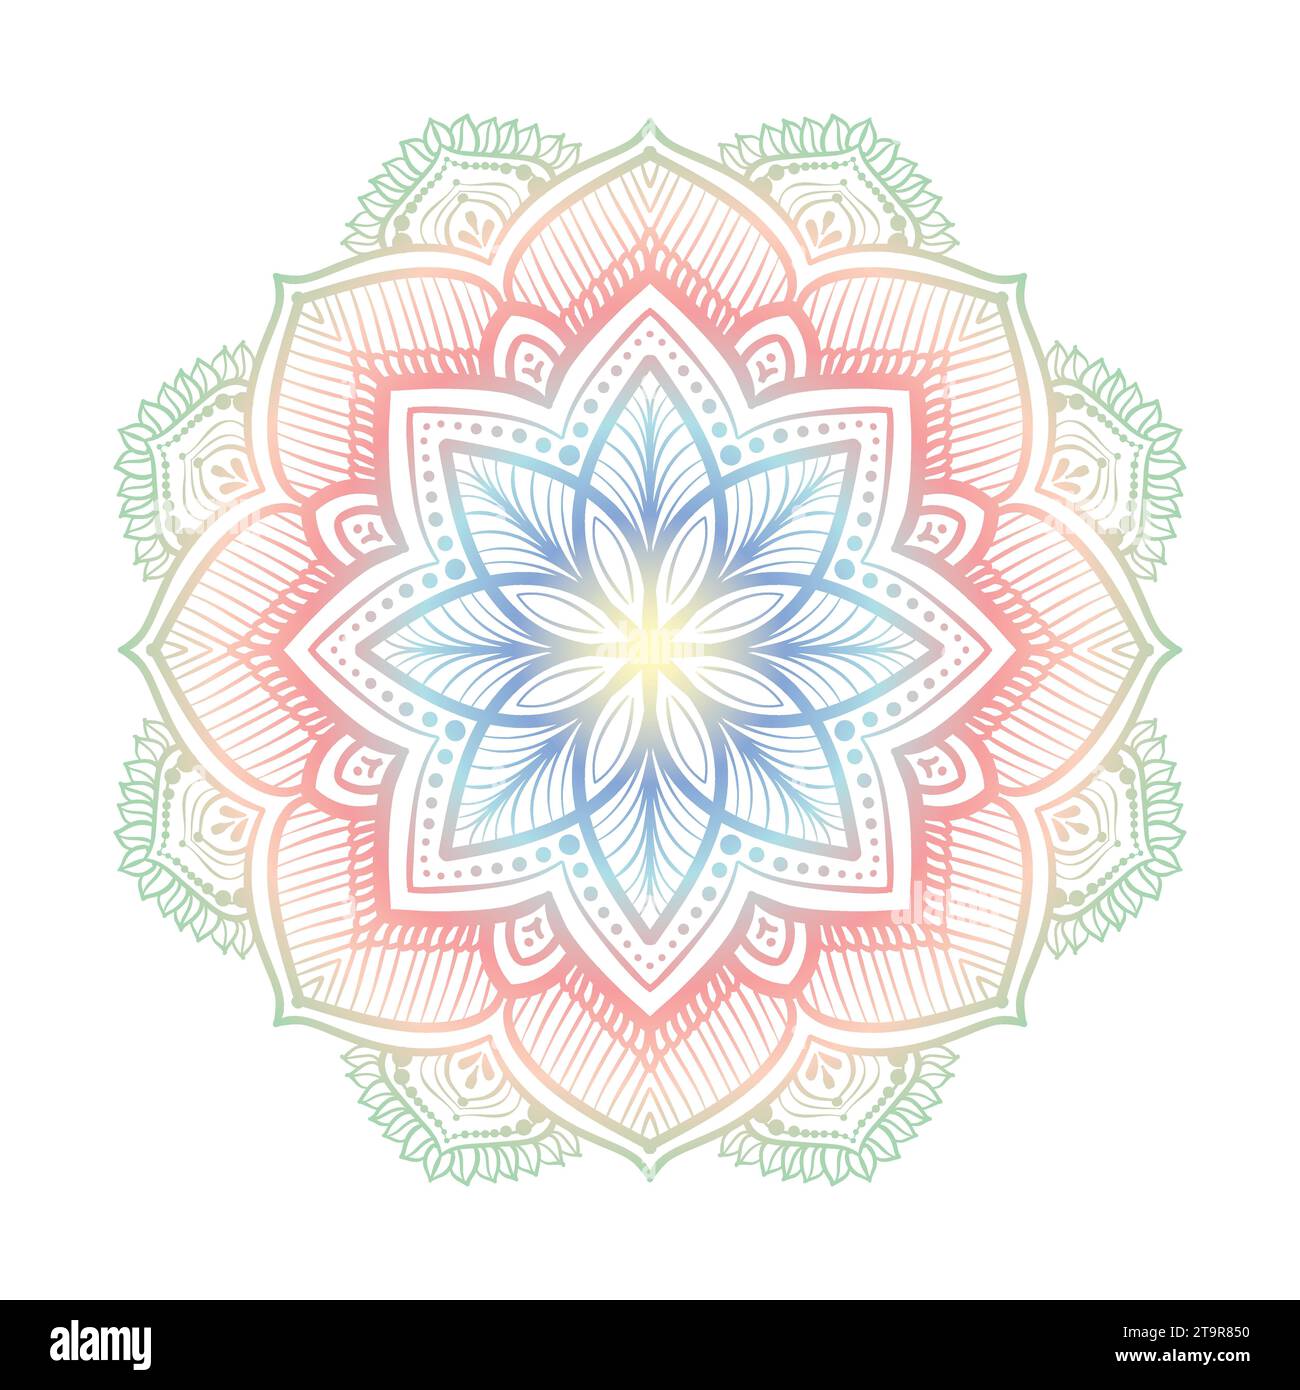 Farbenfrohes Mandala, orientalisches Mandala mit ethnischen Mustern für traditionelle Dekoration, Spiritualität, Inneneinrichtung, Malbuch Stock Vektor